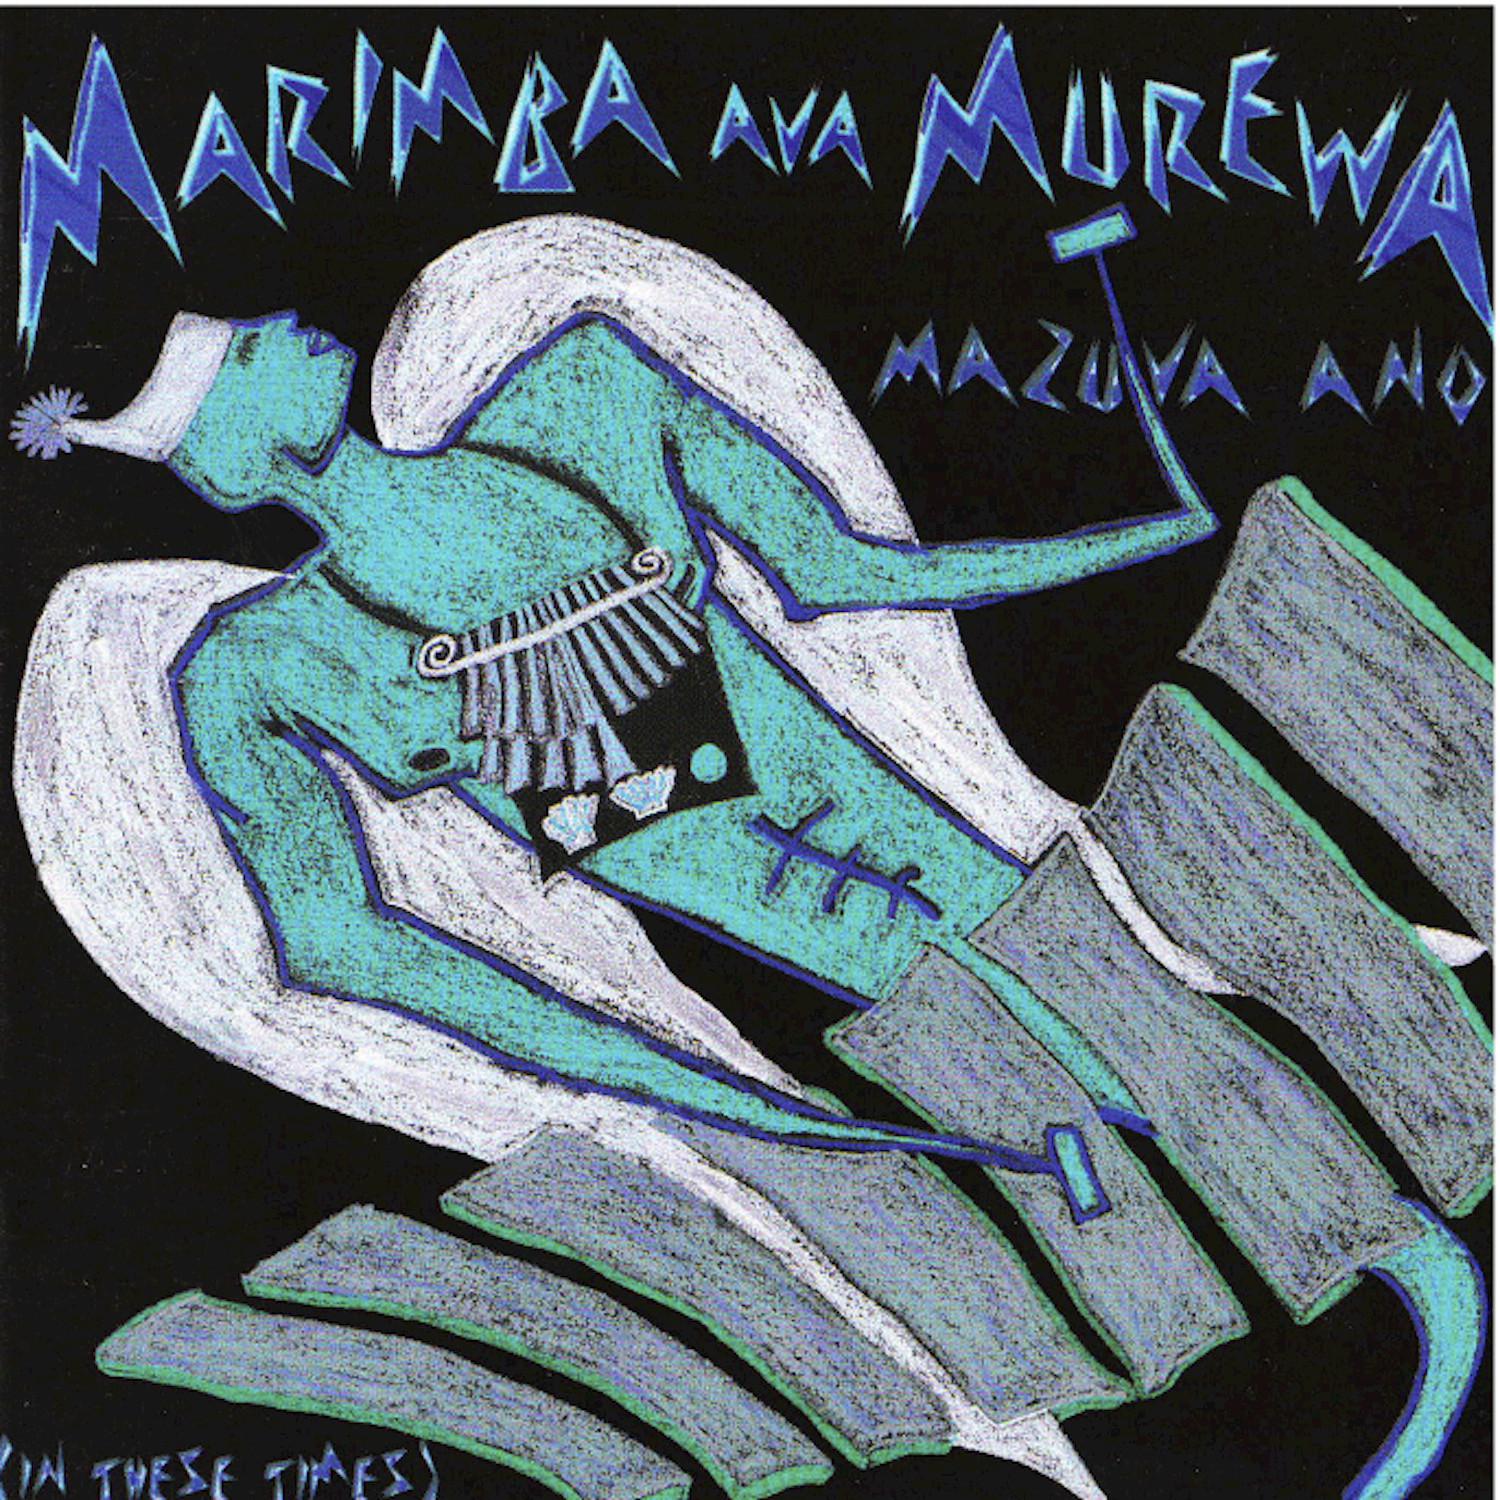 Marimba Ava Murewa